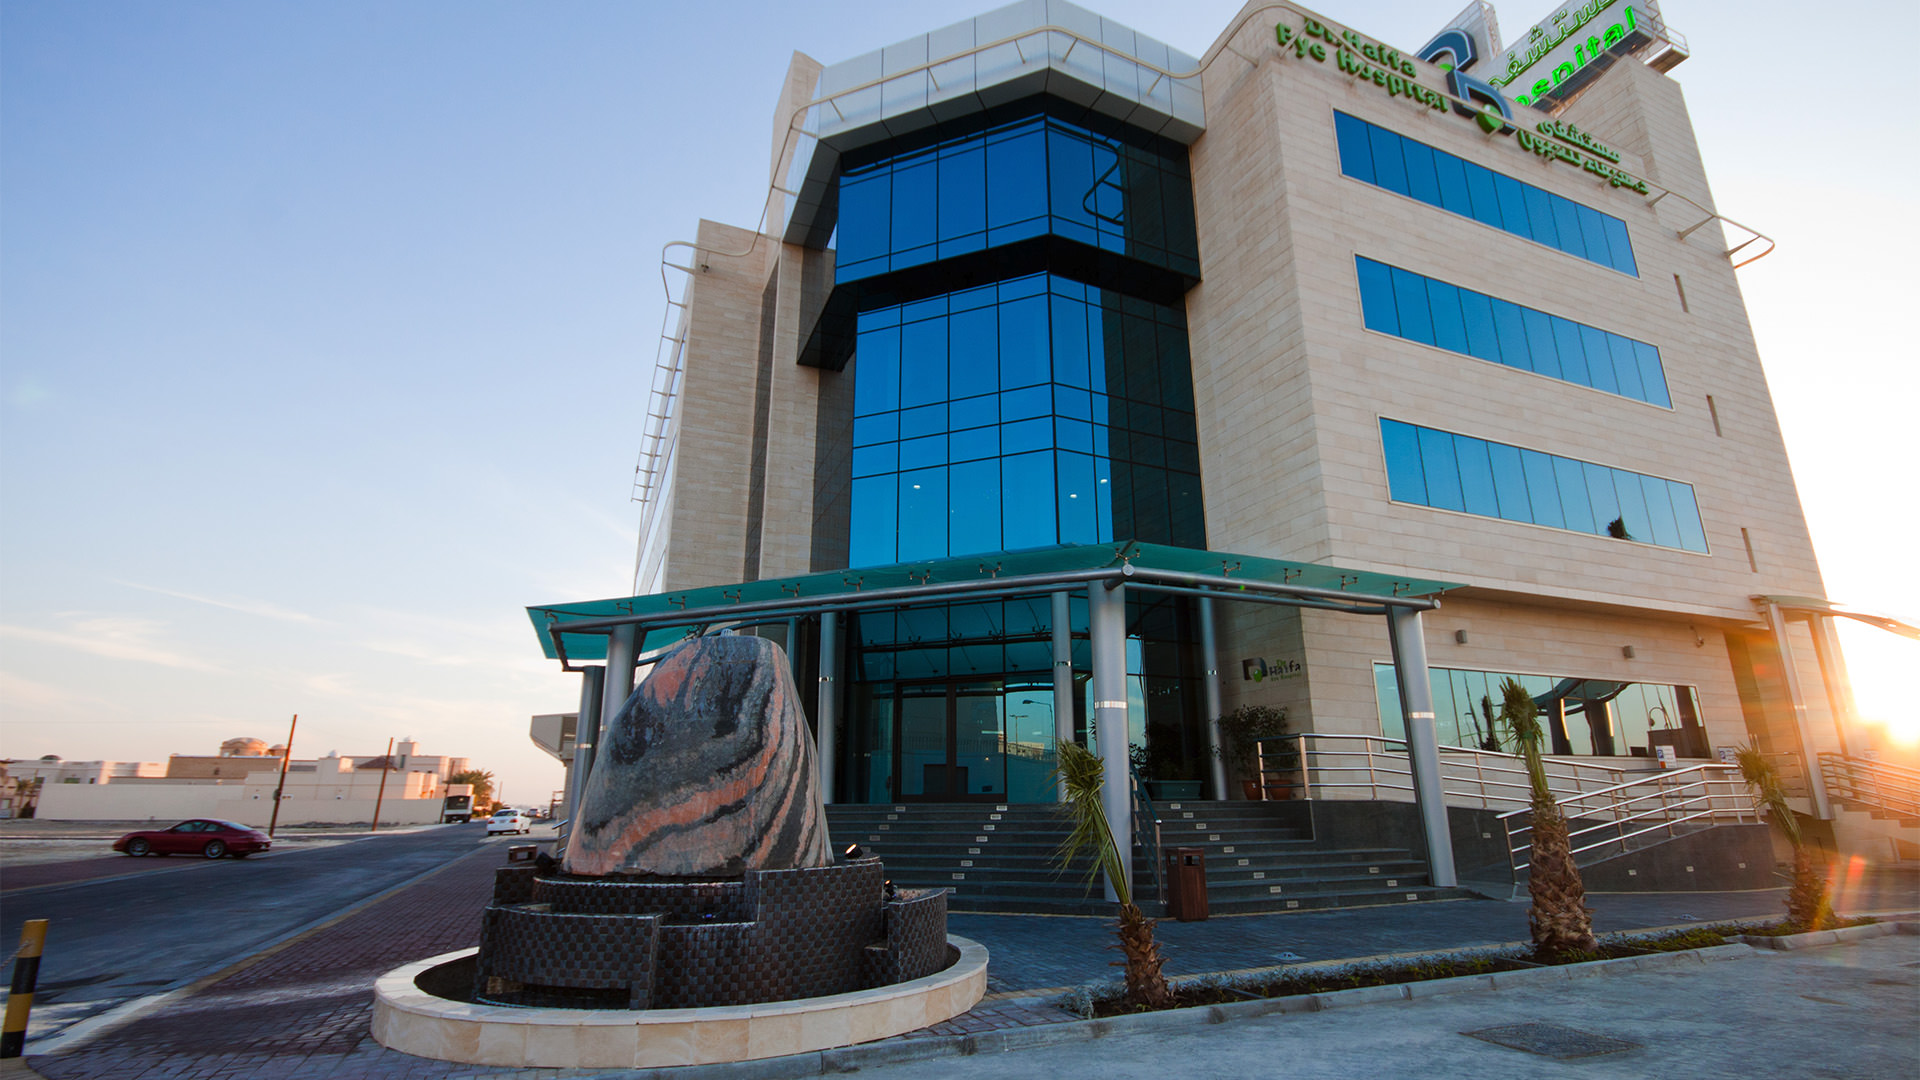 Dr Haifa Eye Hospital by Arab Architects